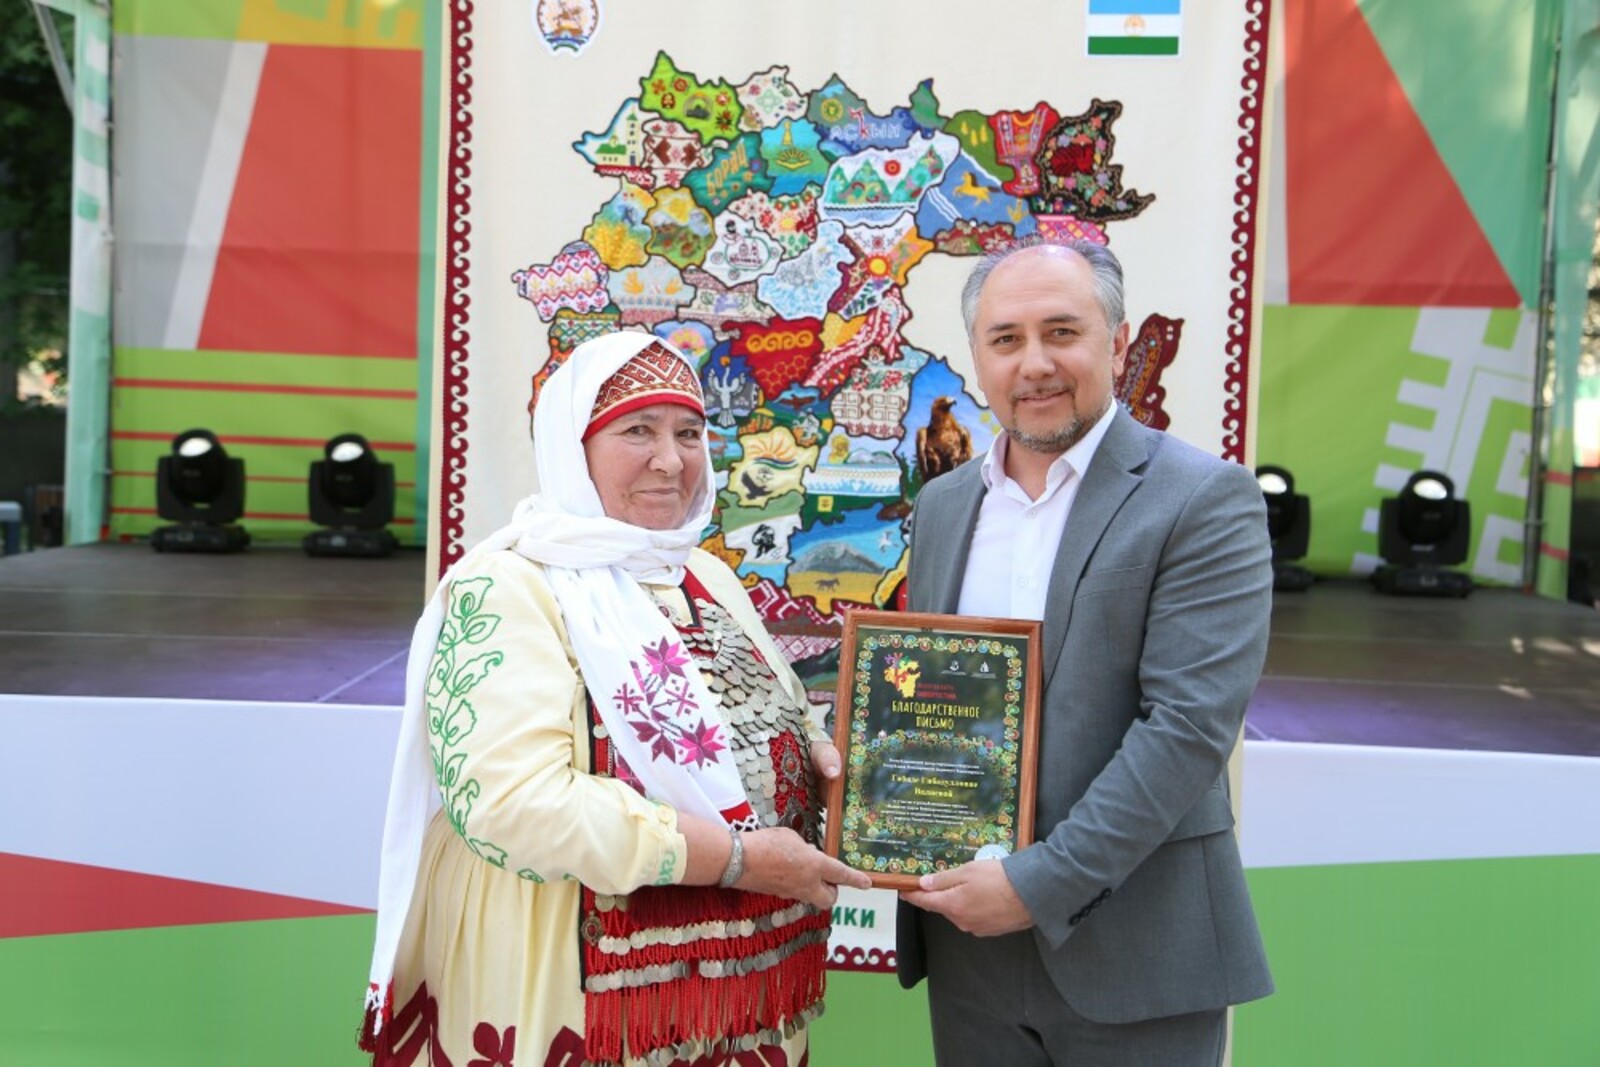 Иглинская мастерица вышила карты 26 муниципалитетов Башкортостана